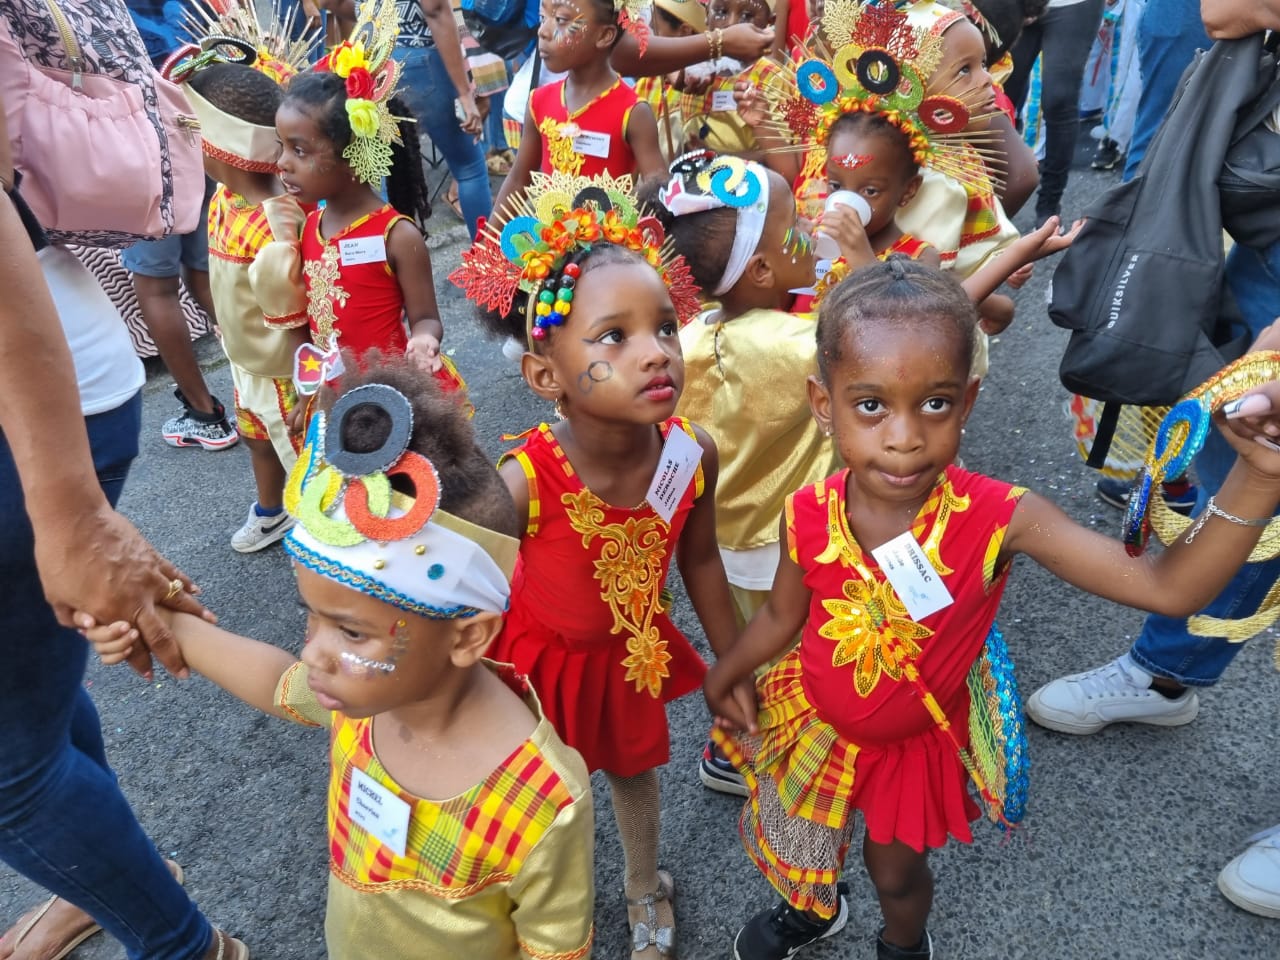     [En images] Carnaval des enfants : une ronde olympique exceptionnelle !

